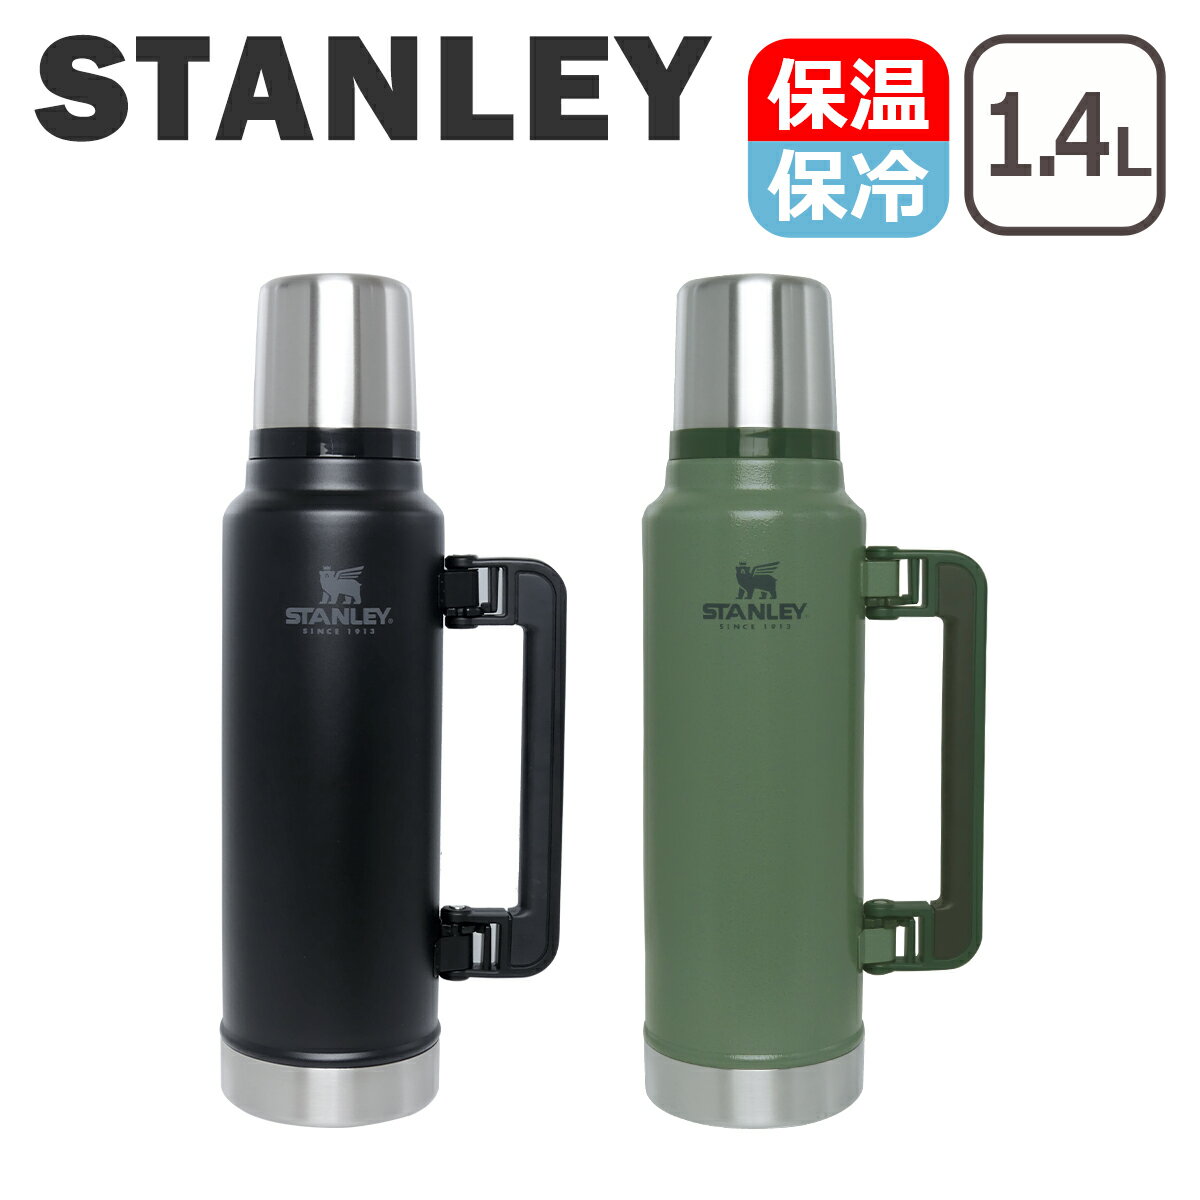 スタンレー Stanley 水筒 クラシック真空ボトル Legendary Classic Vacuum Bottle 1.4L 10-08265 ステンレスマグ マグボトル クラシック ボトル ステンレスボトル 保冷 保温